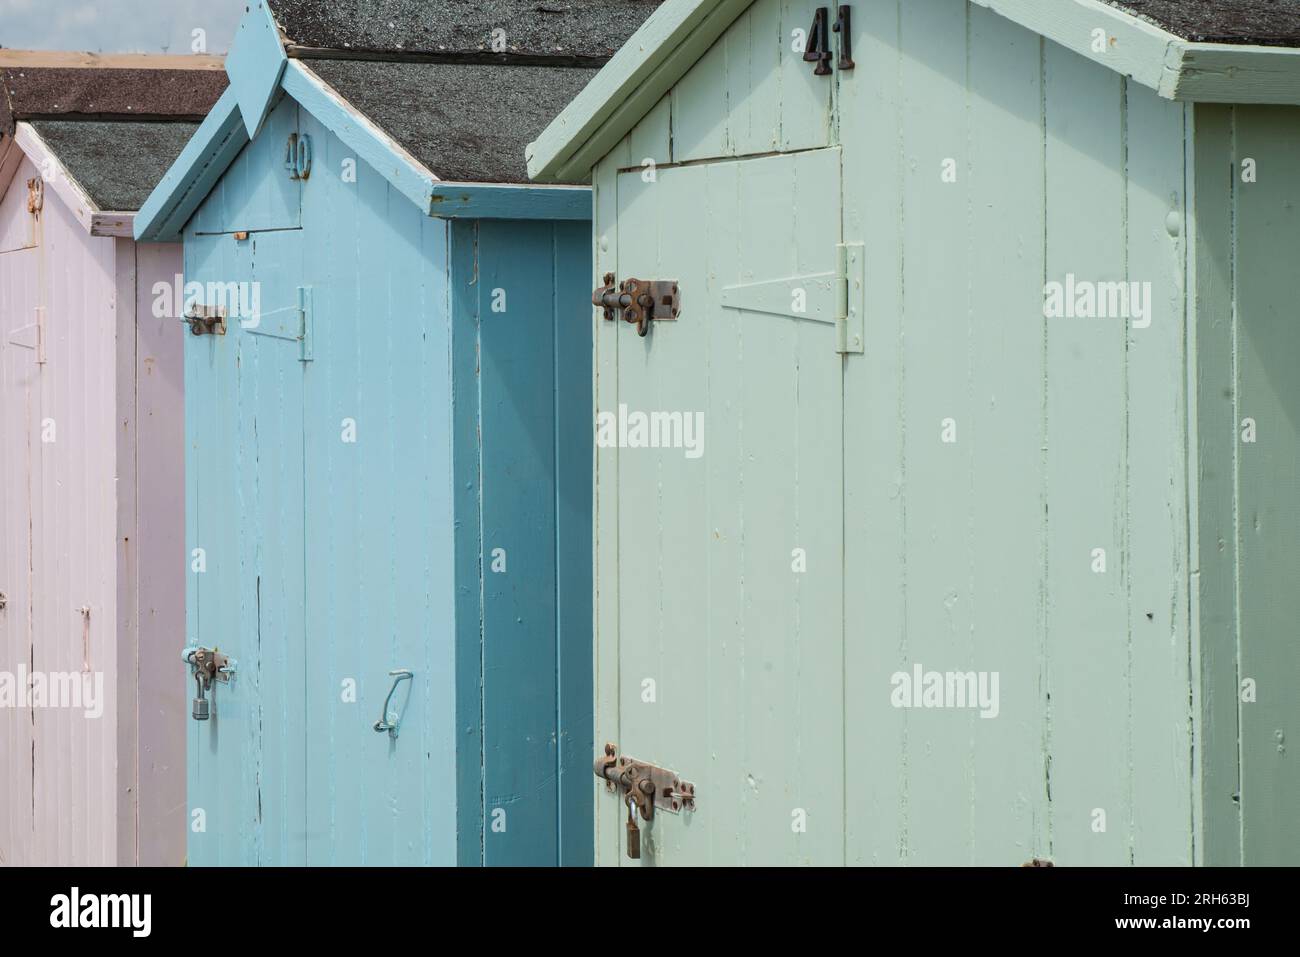 Hölzerne Strandhütten in Pastelltönen im Budleight Salterton, Devon, England Stockfoto